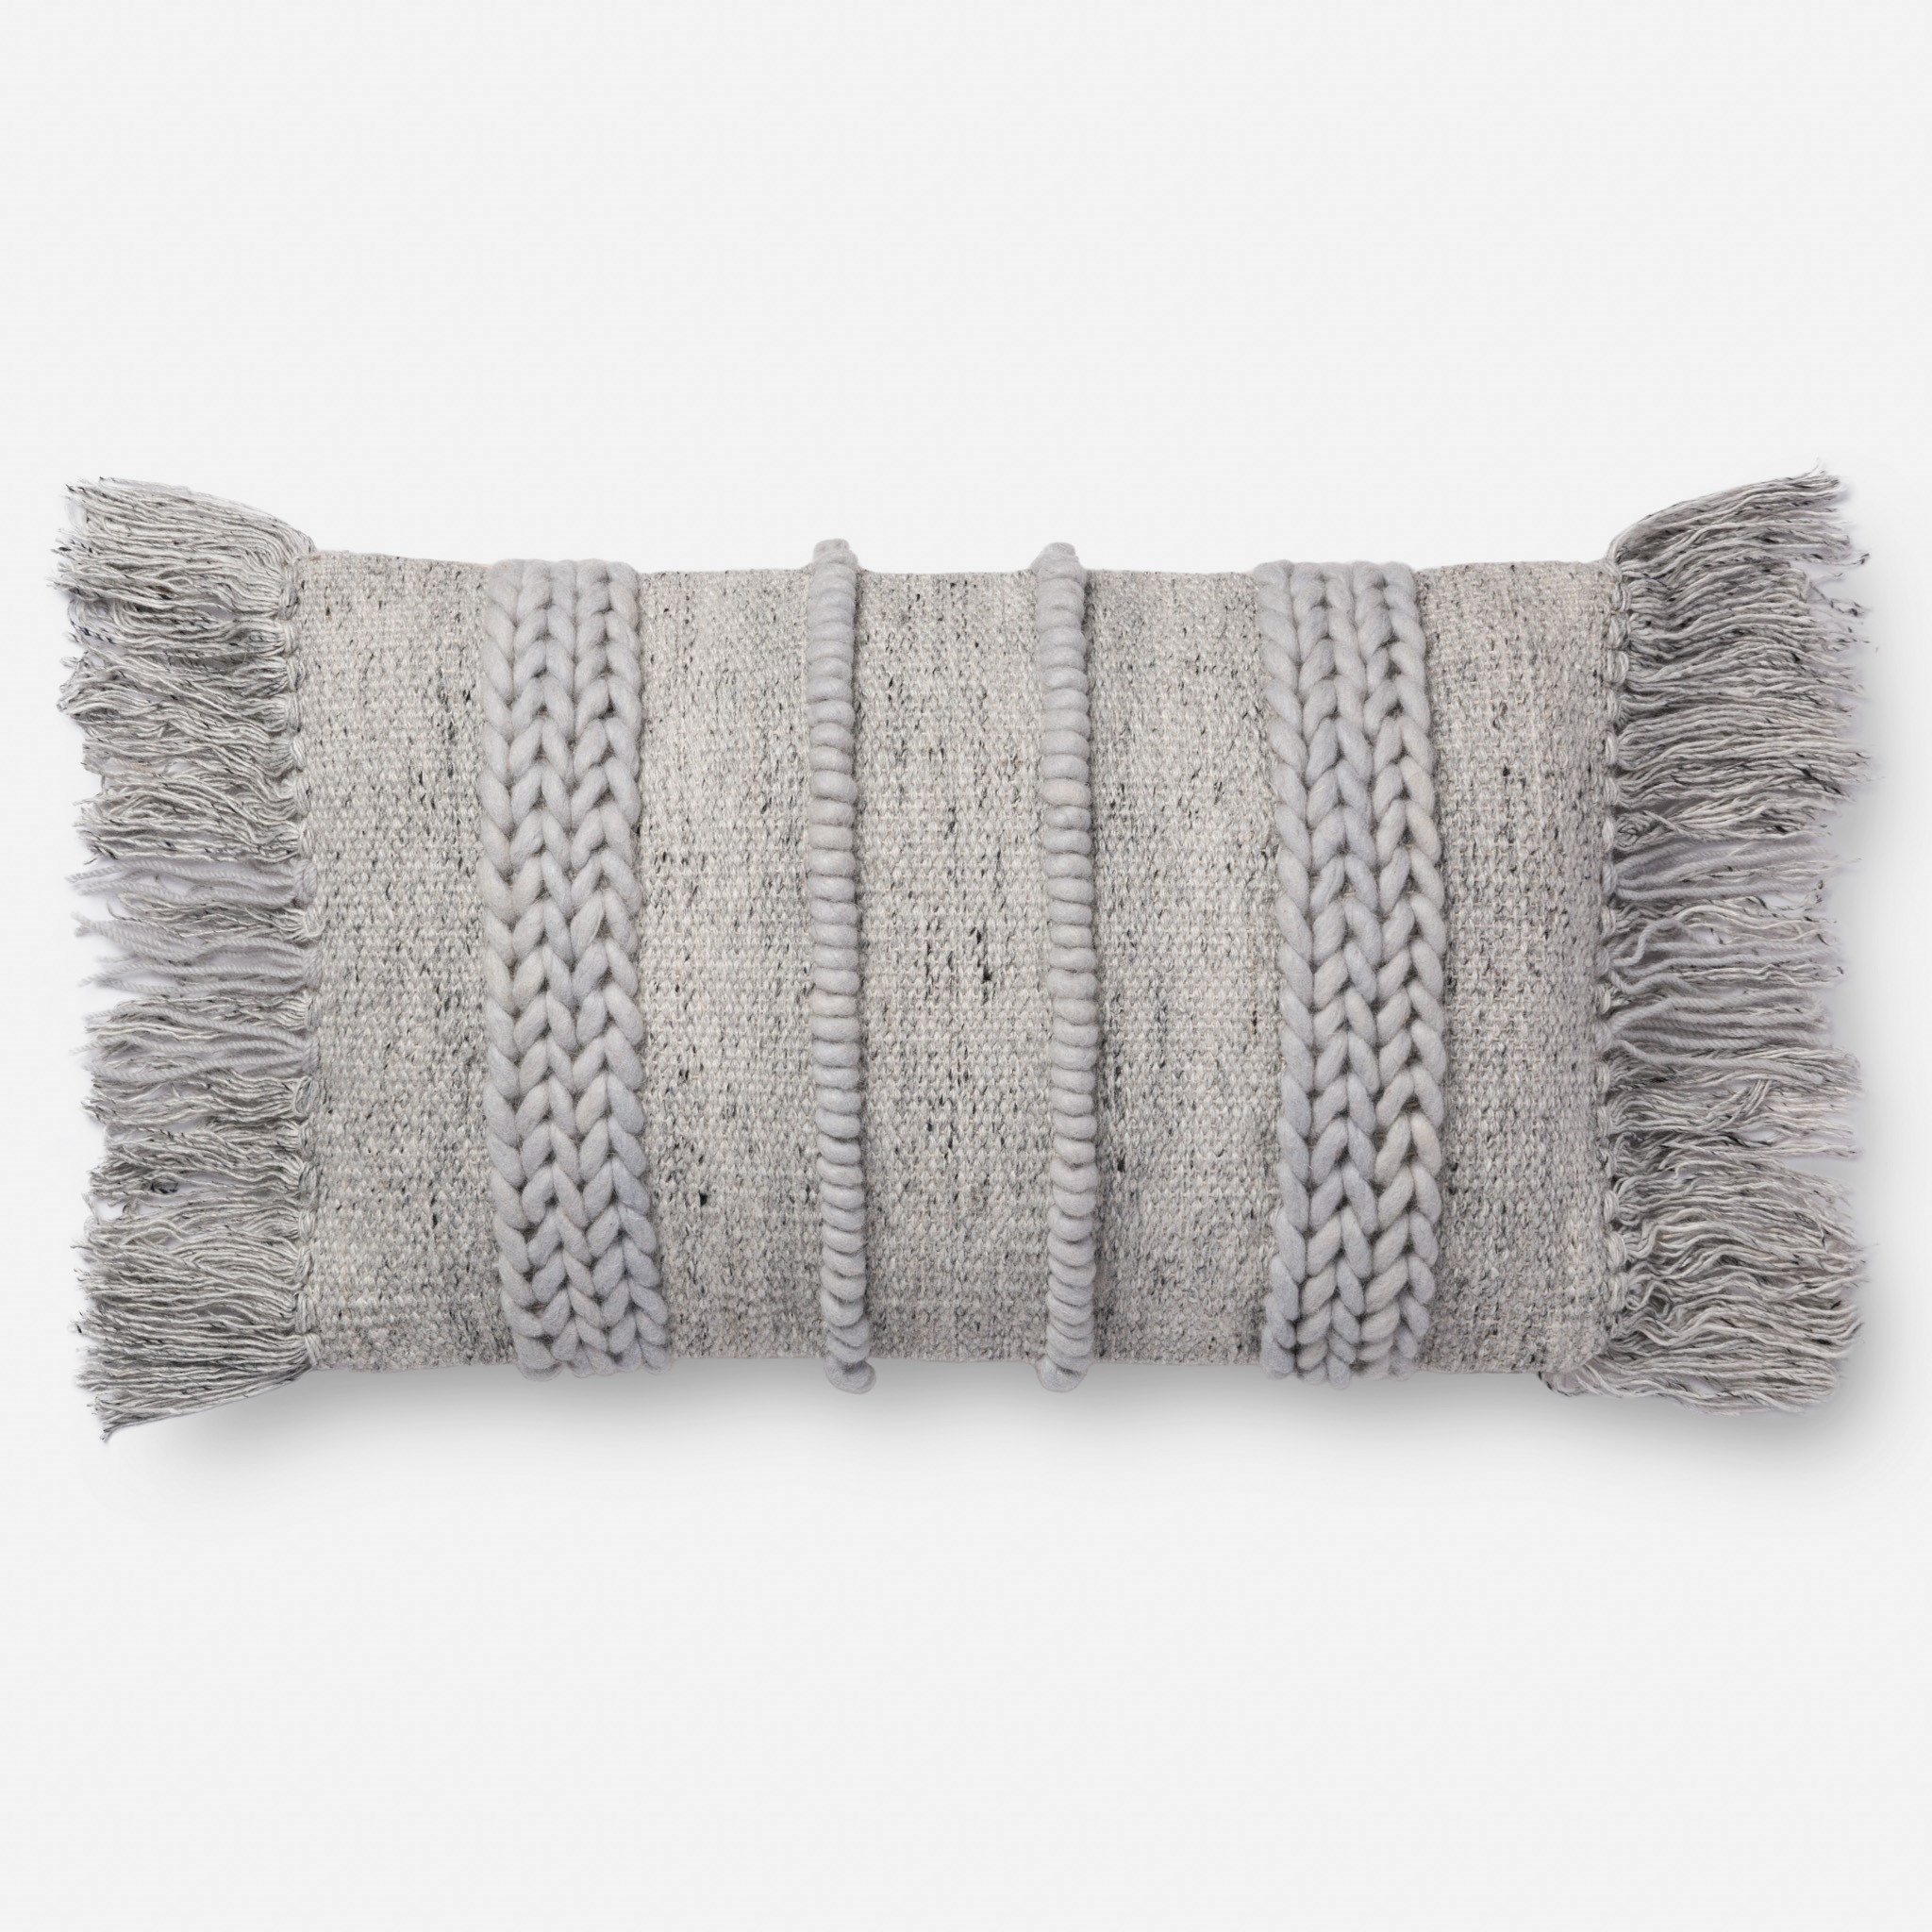 Fringe Lumbar Throw Pillow, 21" x 13", Gray - Image 0